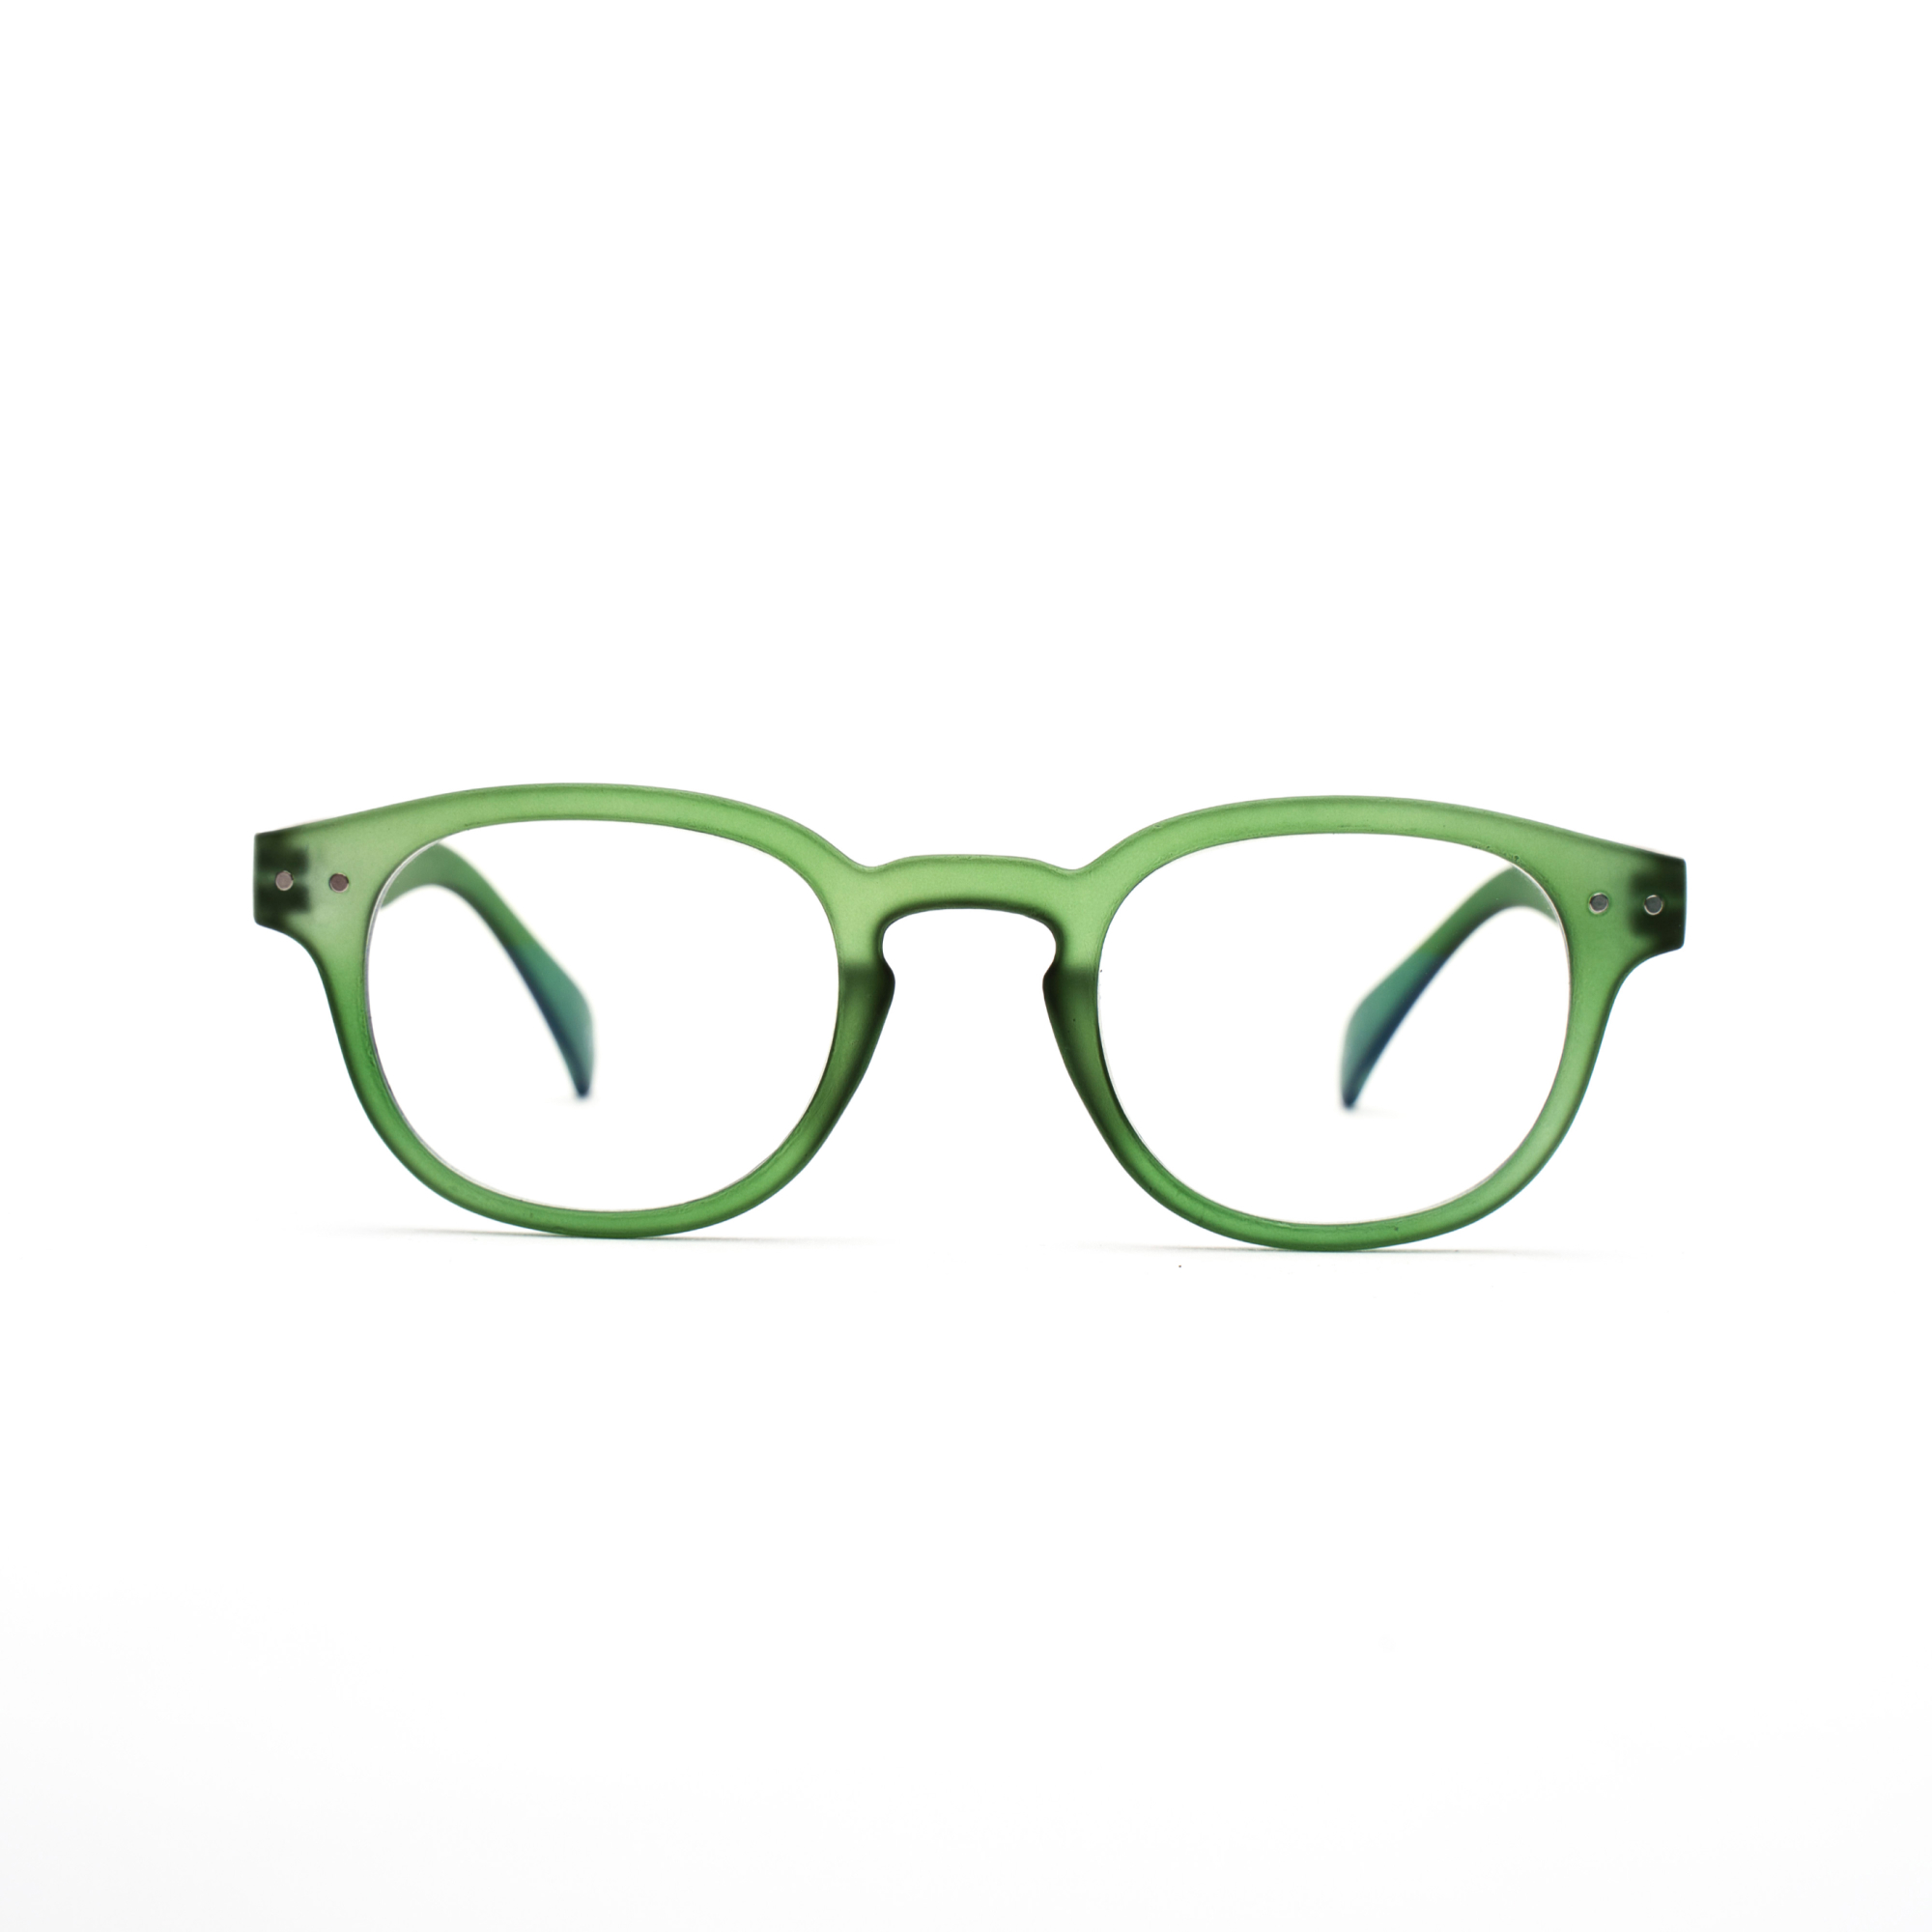 Men's reading glasses – Anton Ultimate m - Green